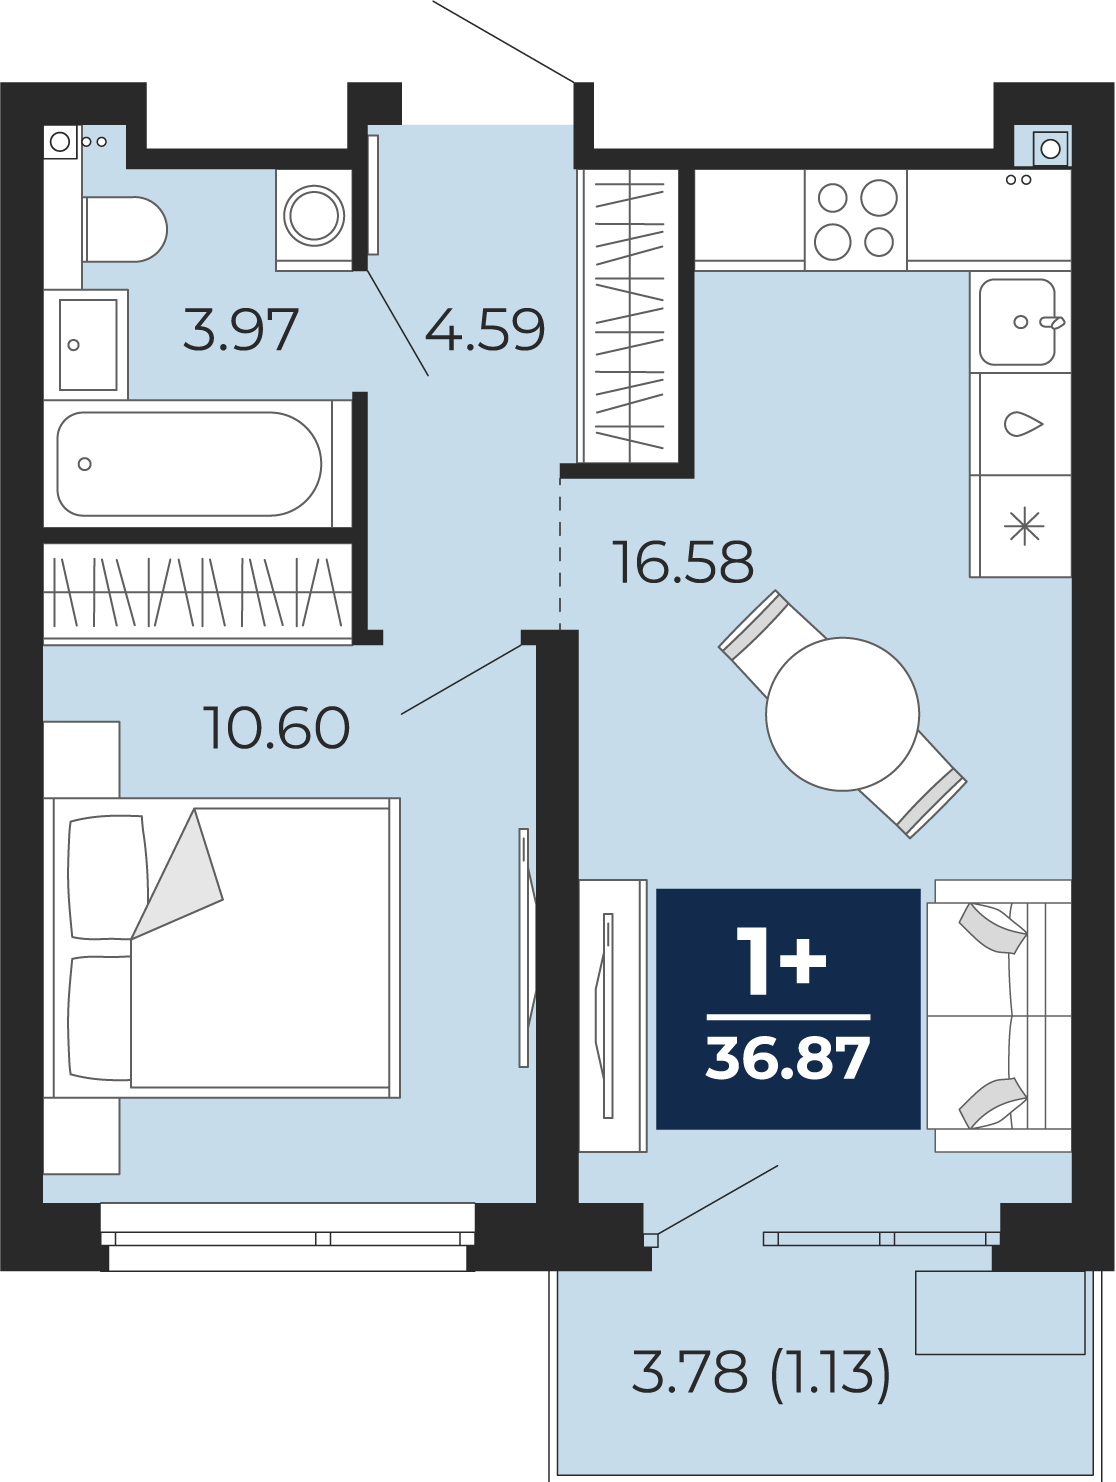 Квартира № 276, 1-комнатная, 36.87 кв. м, 17 этаж